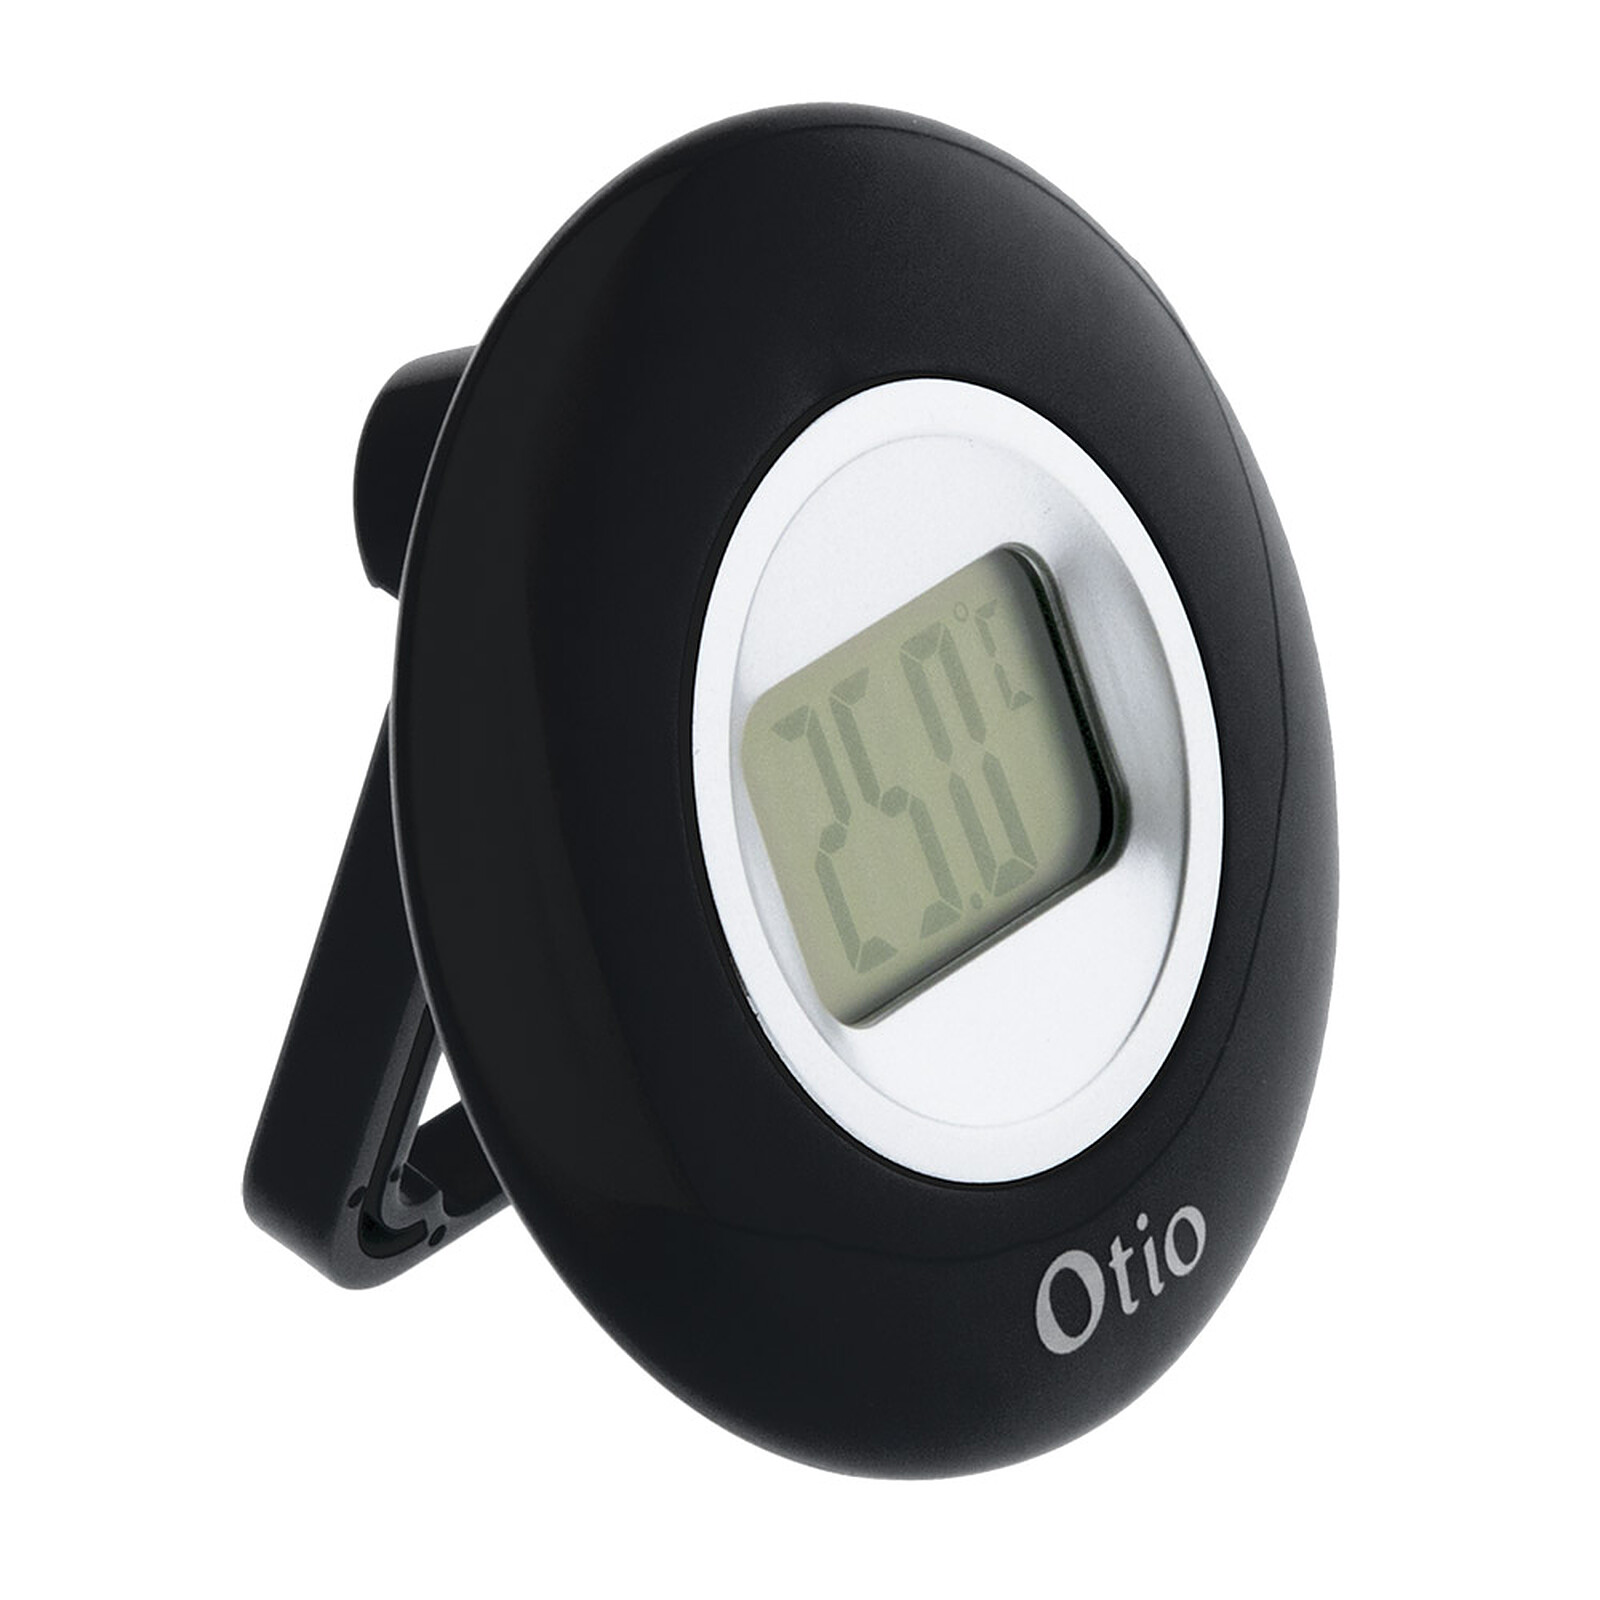 Thermomètre digital sans fil - intérieur/extérieur - coloris noir